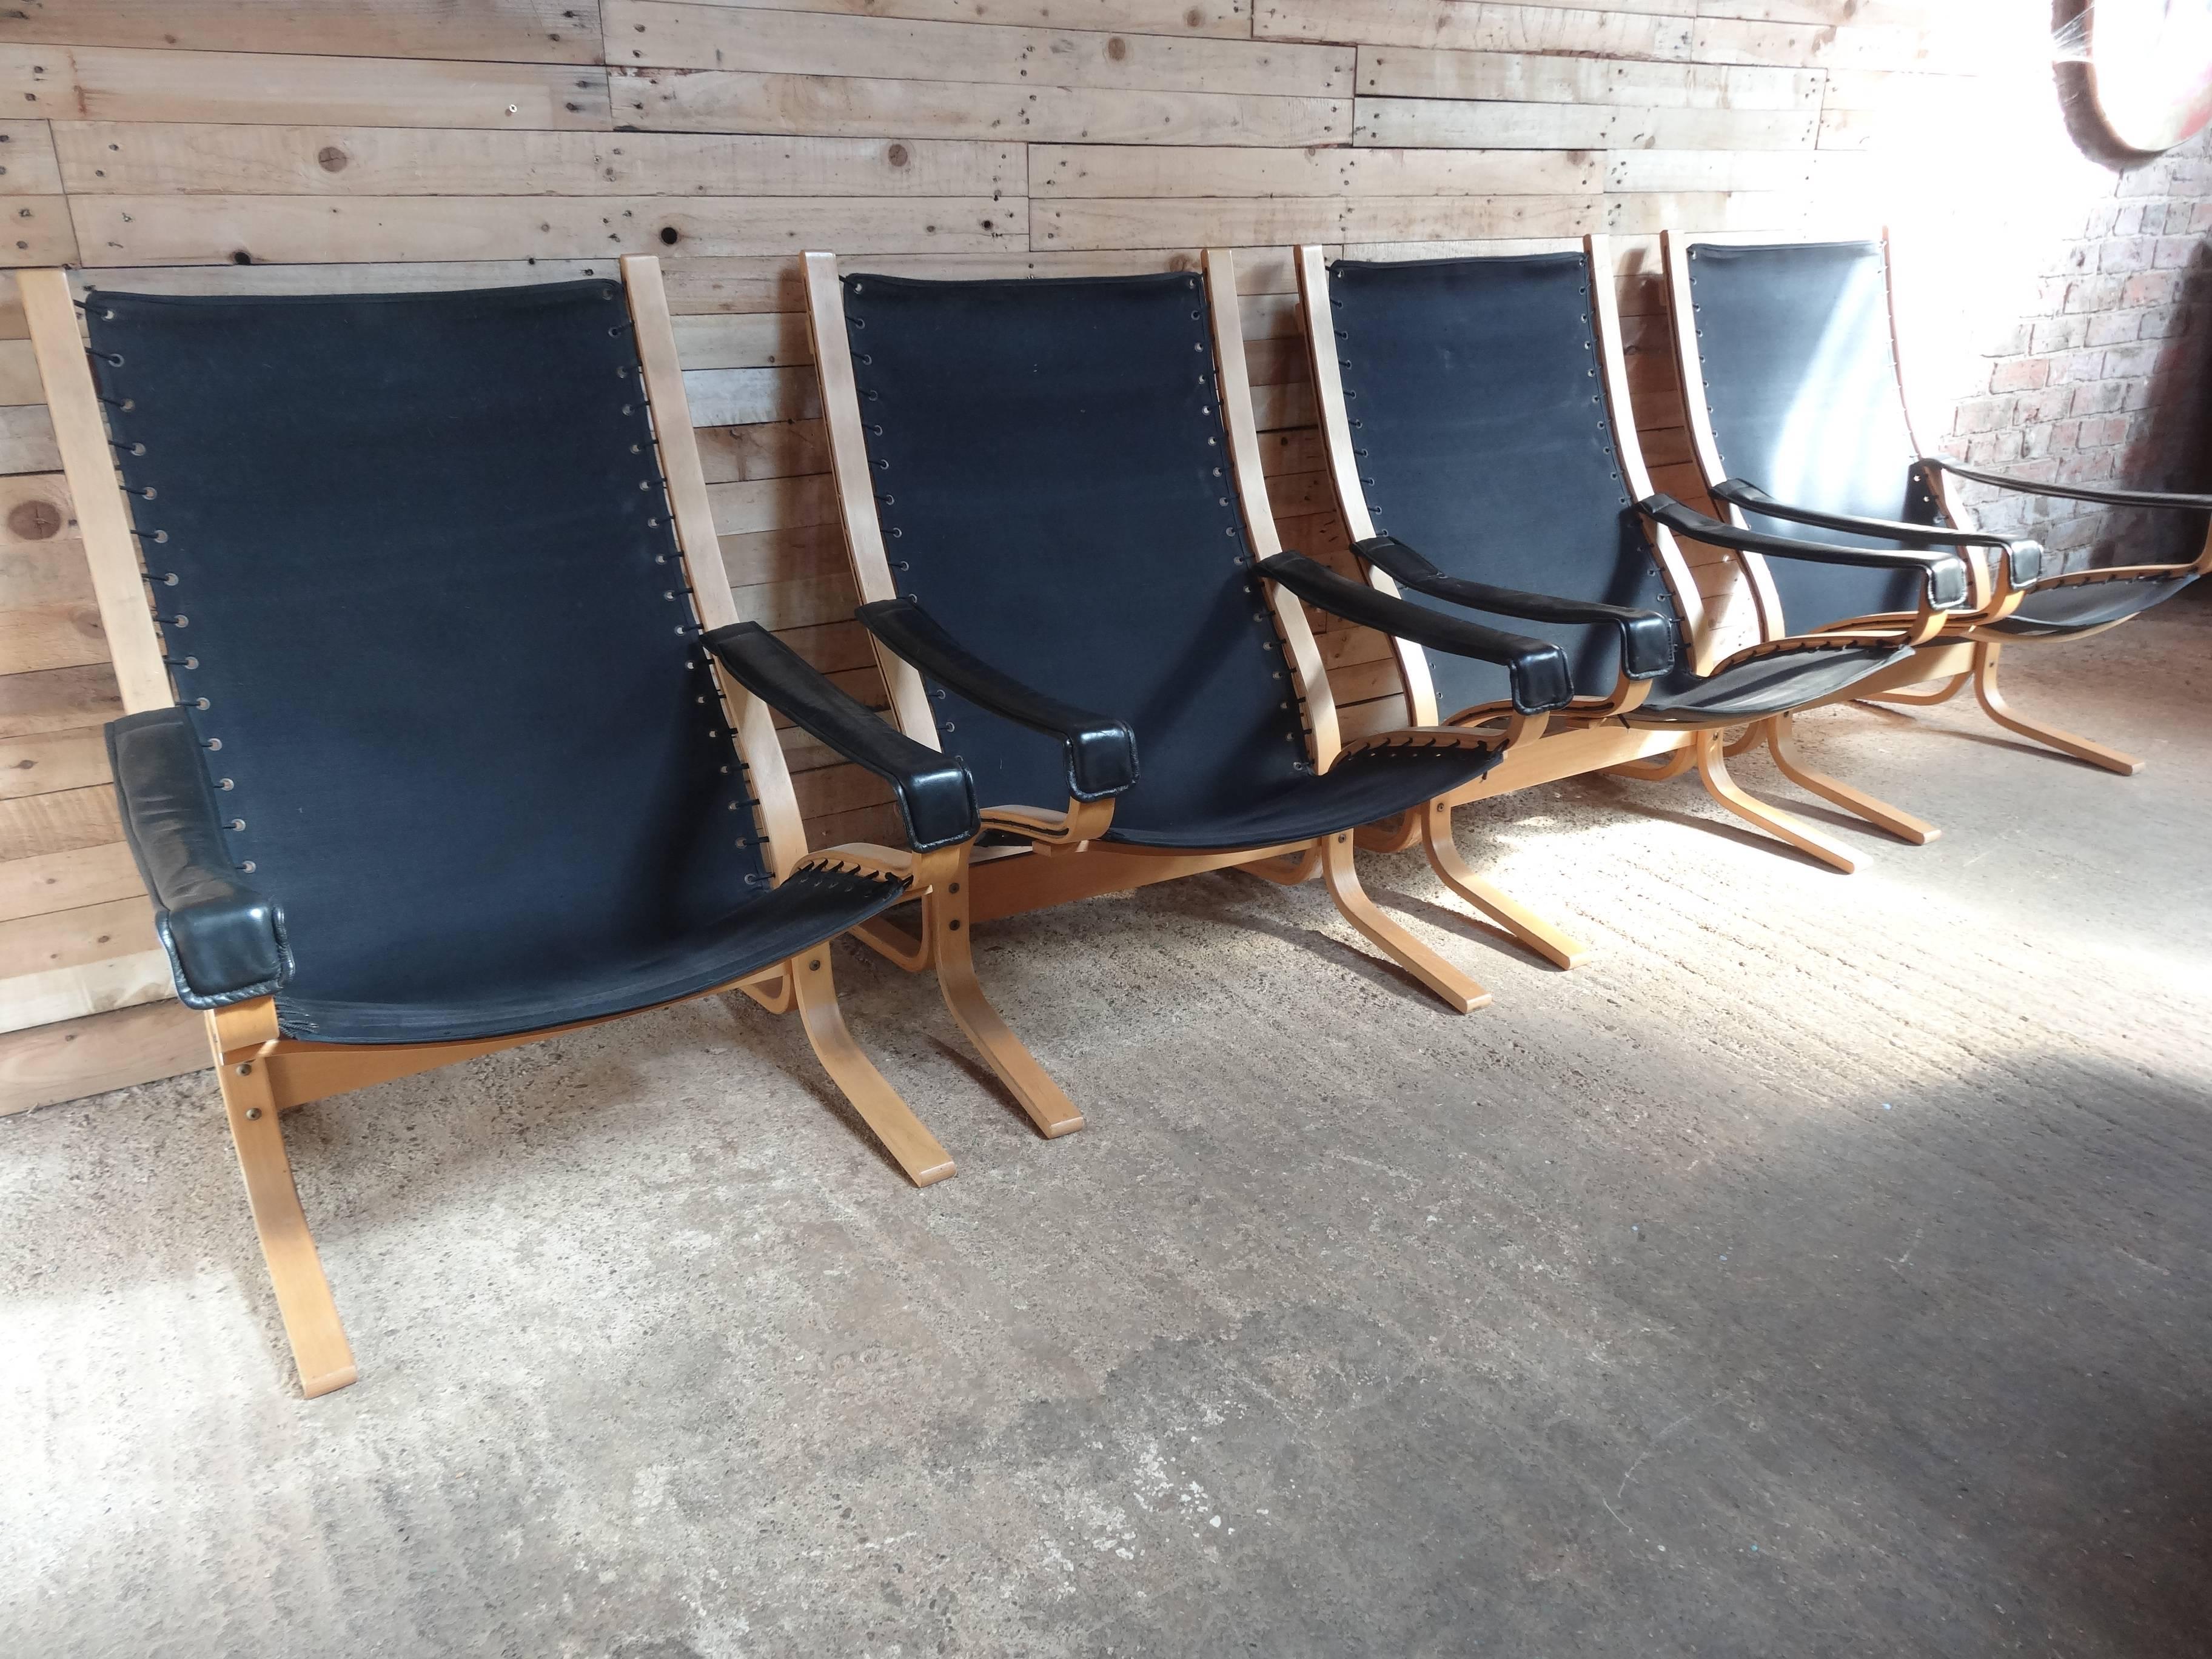 Retro Vintage original skandinavische Ingmar Relling entworfen Bugholz ungewöhnlich Licht Holz Siesta Sessel in einem schönen Retro schwarzen Stoff bezogen.

Maße des Stuhls (ungefähr): Sitzhöhe 44 cm, Rückenhöhe 99 cm, Tiefe 85 cm, Breite 73